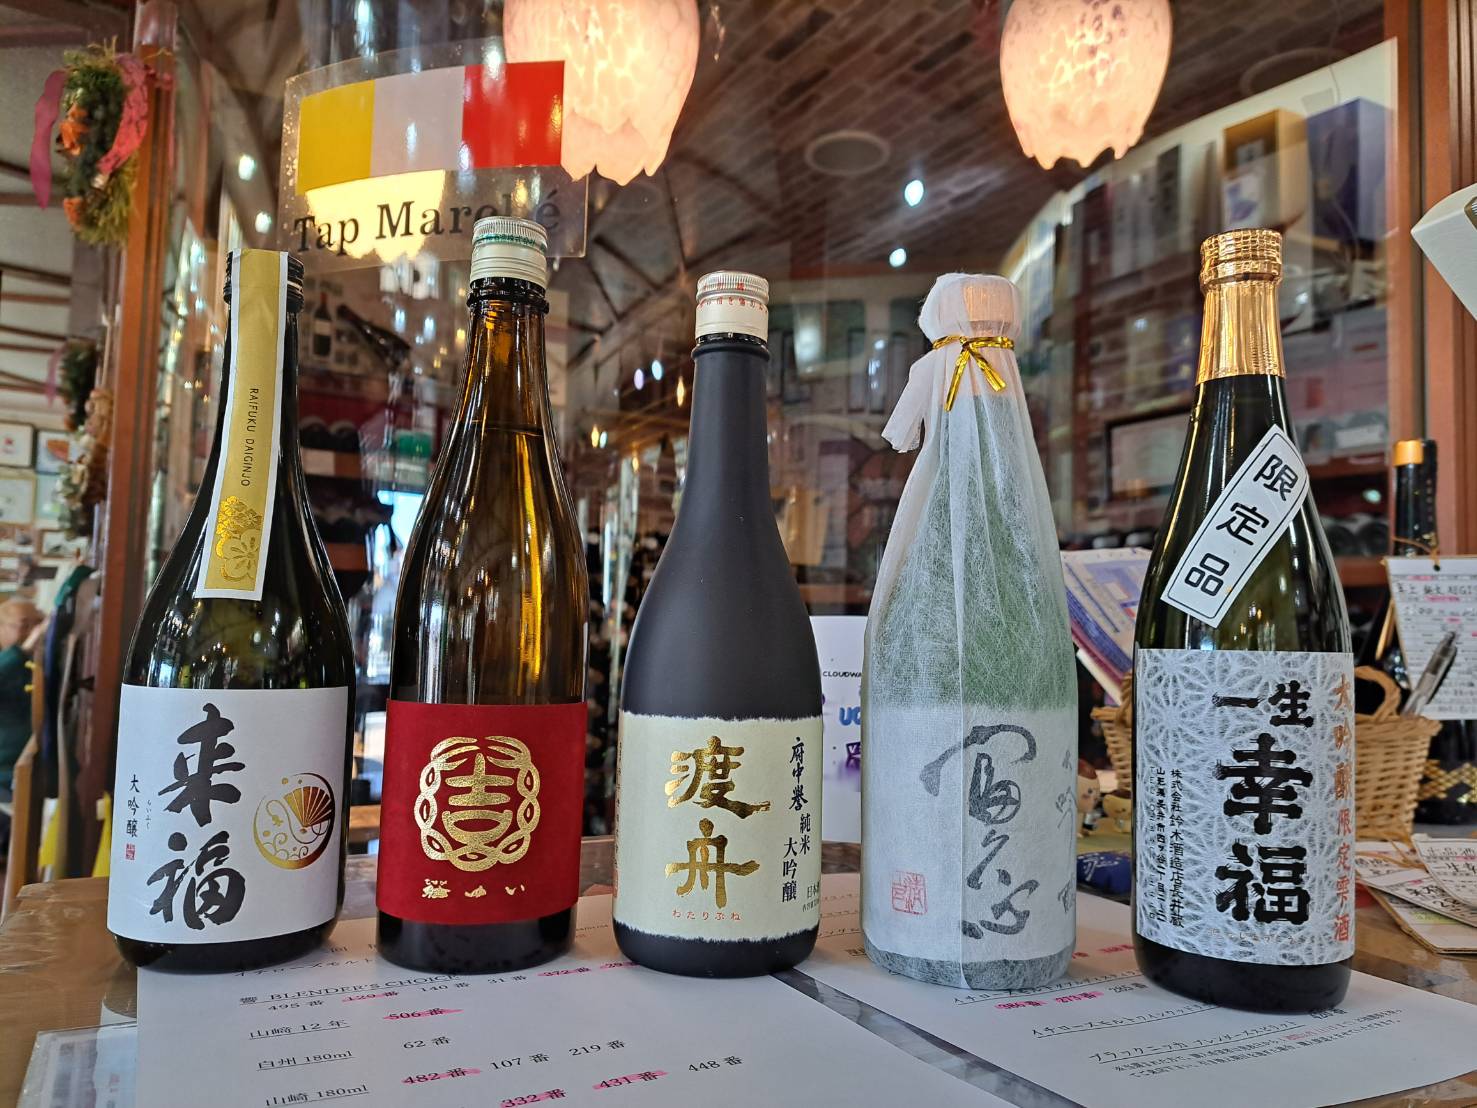 『二十歳を祝う宴席にお勧めの日本酒をご紹介します』